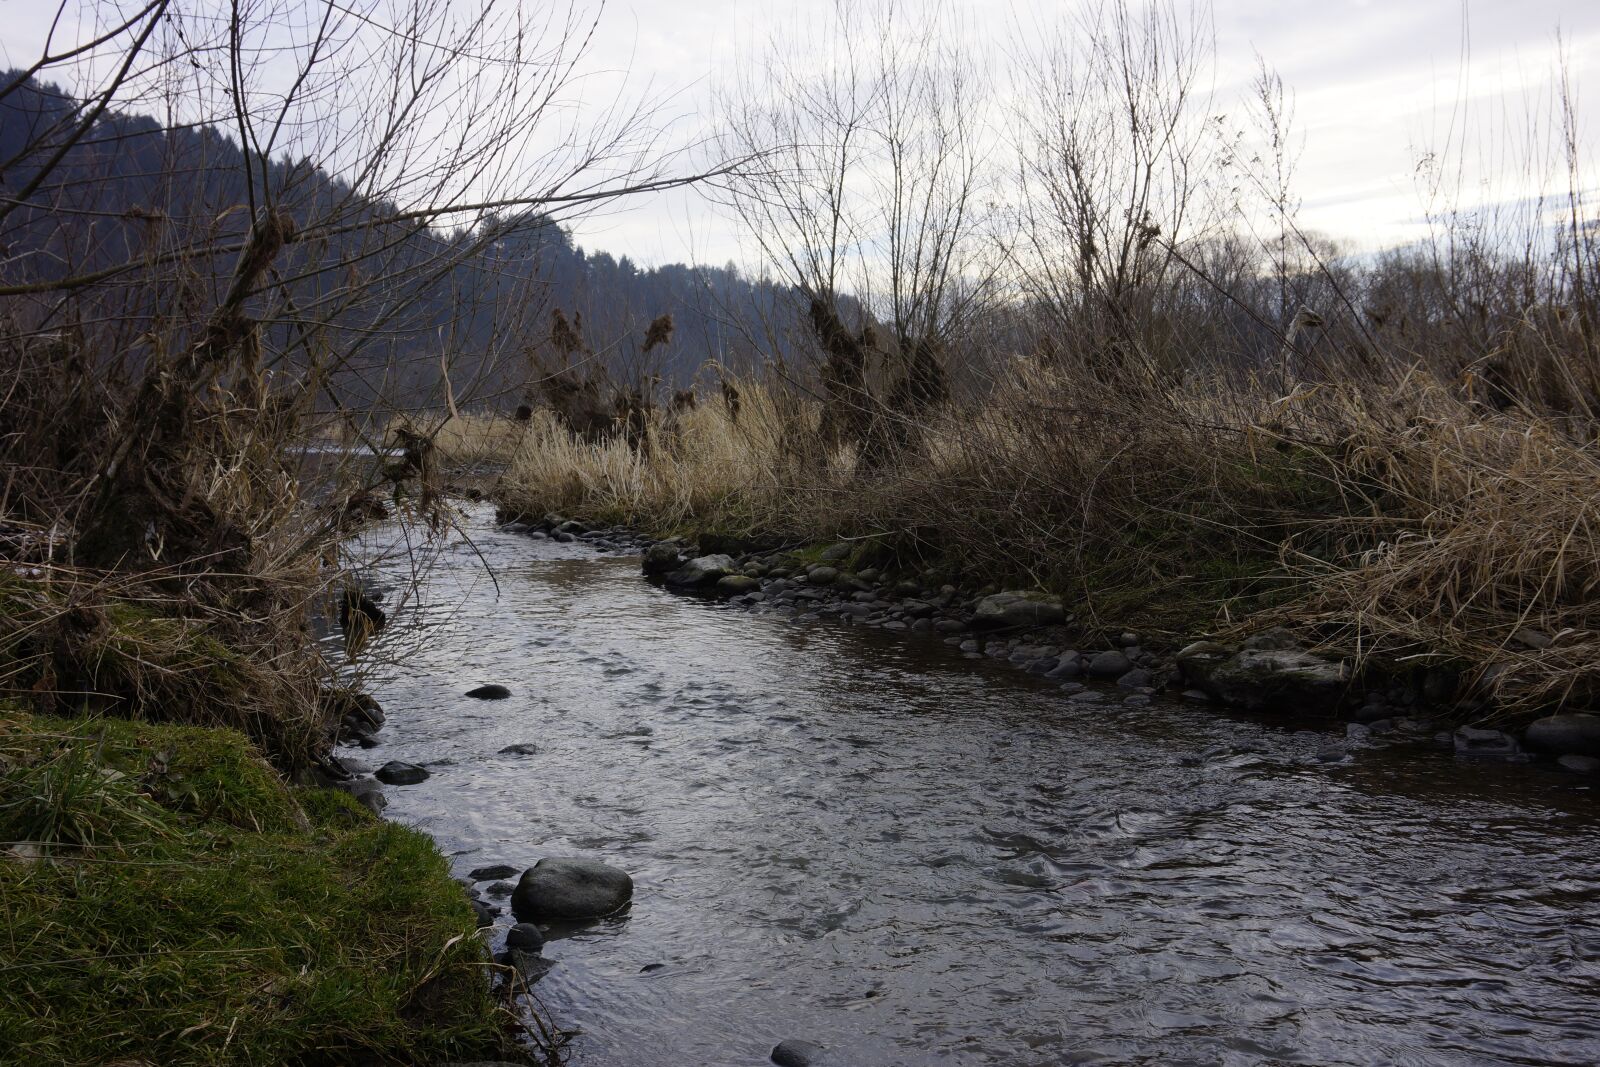 Sony Alpha NEX-7 sample photo. River, nature, pieniny photography